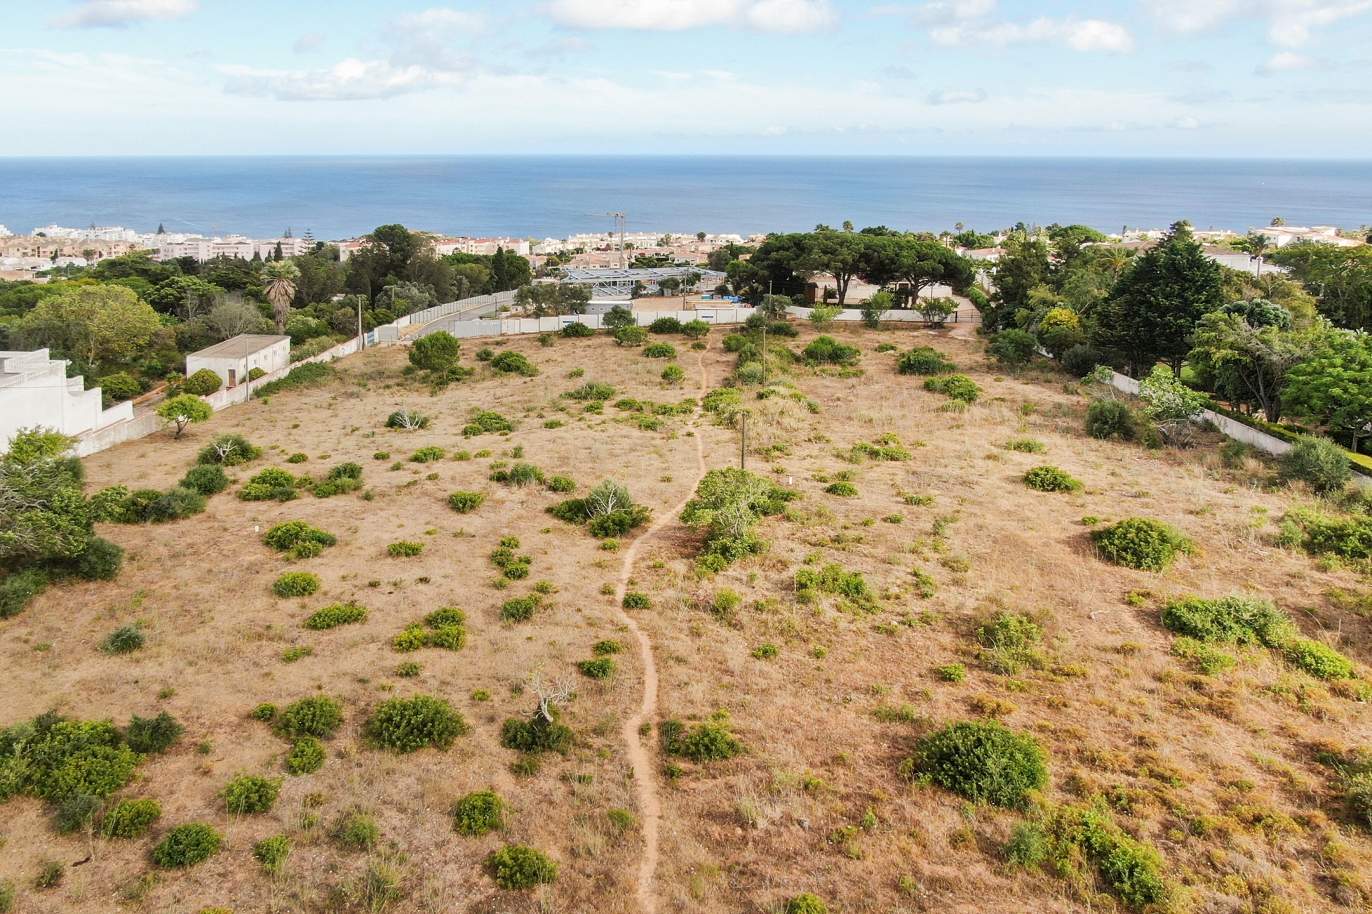 Parcela de terreno, con posibilidad de construcción, Praia da Luz, Lagos, Algarve_172832